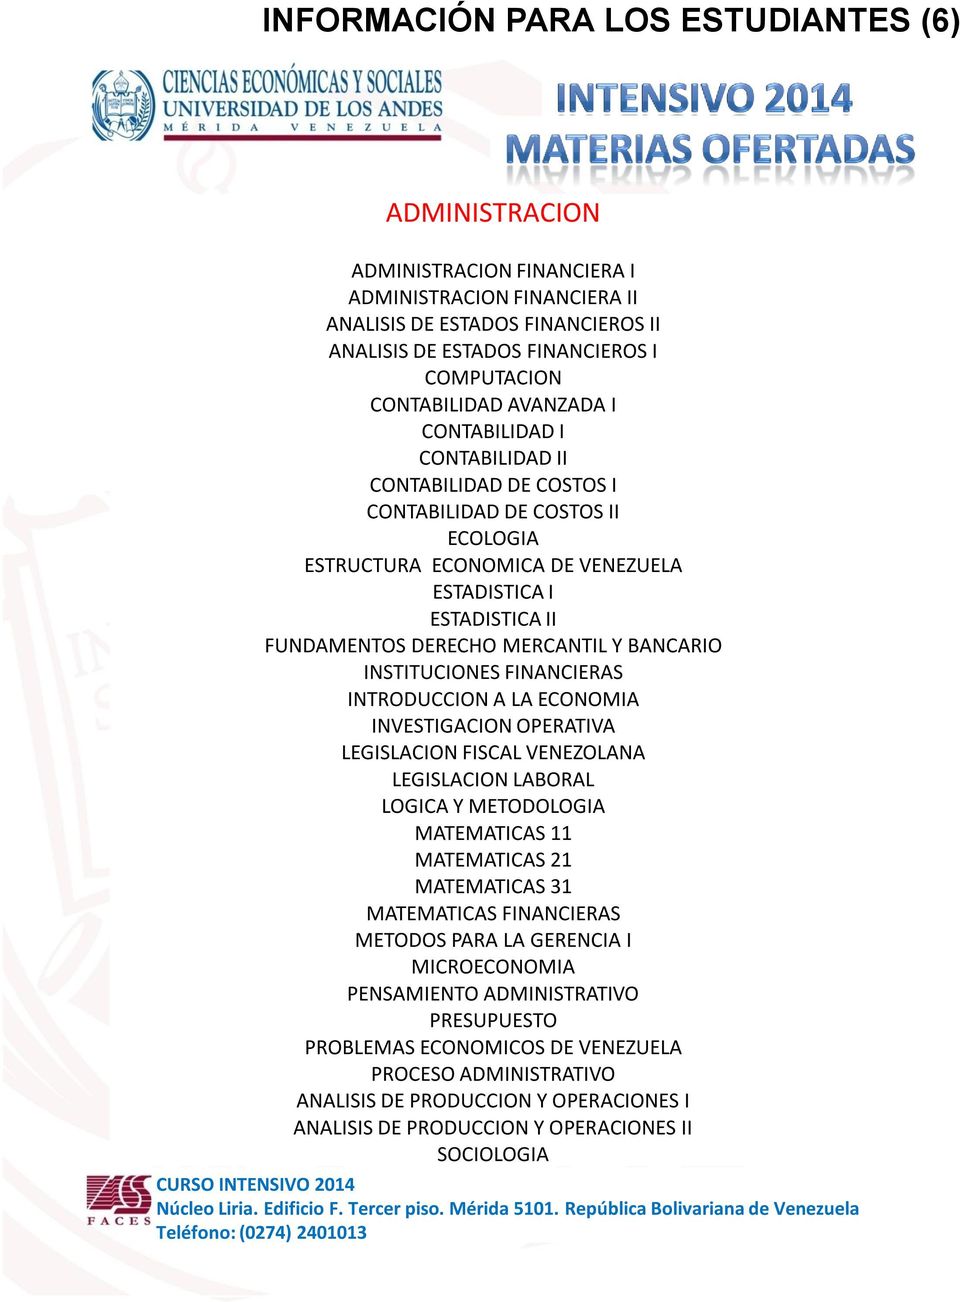 MERCANTIL Y BANCARIO INSTITUCIONES FINANCIERAS INTRODUCCION A LA ECONOMIA INVESTIGACION OPERATIVA LEGISLACION FISCAL VENEZOLANA LEGISLACION LABORAL LOGICA Y METODOLOGIA MATEMATICAS 11 MATEMATICAS 21